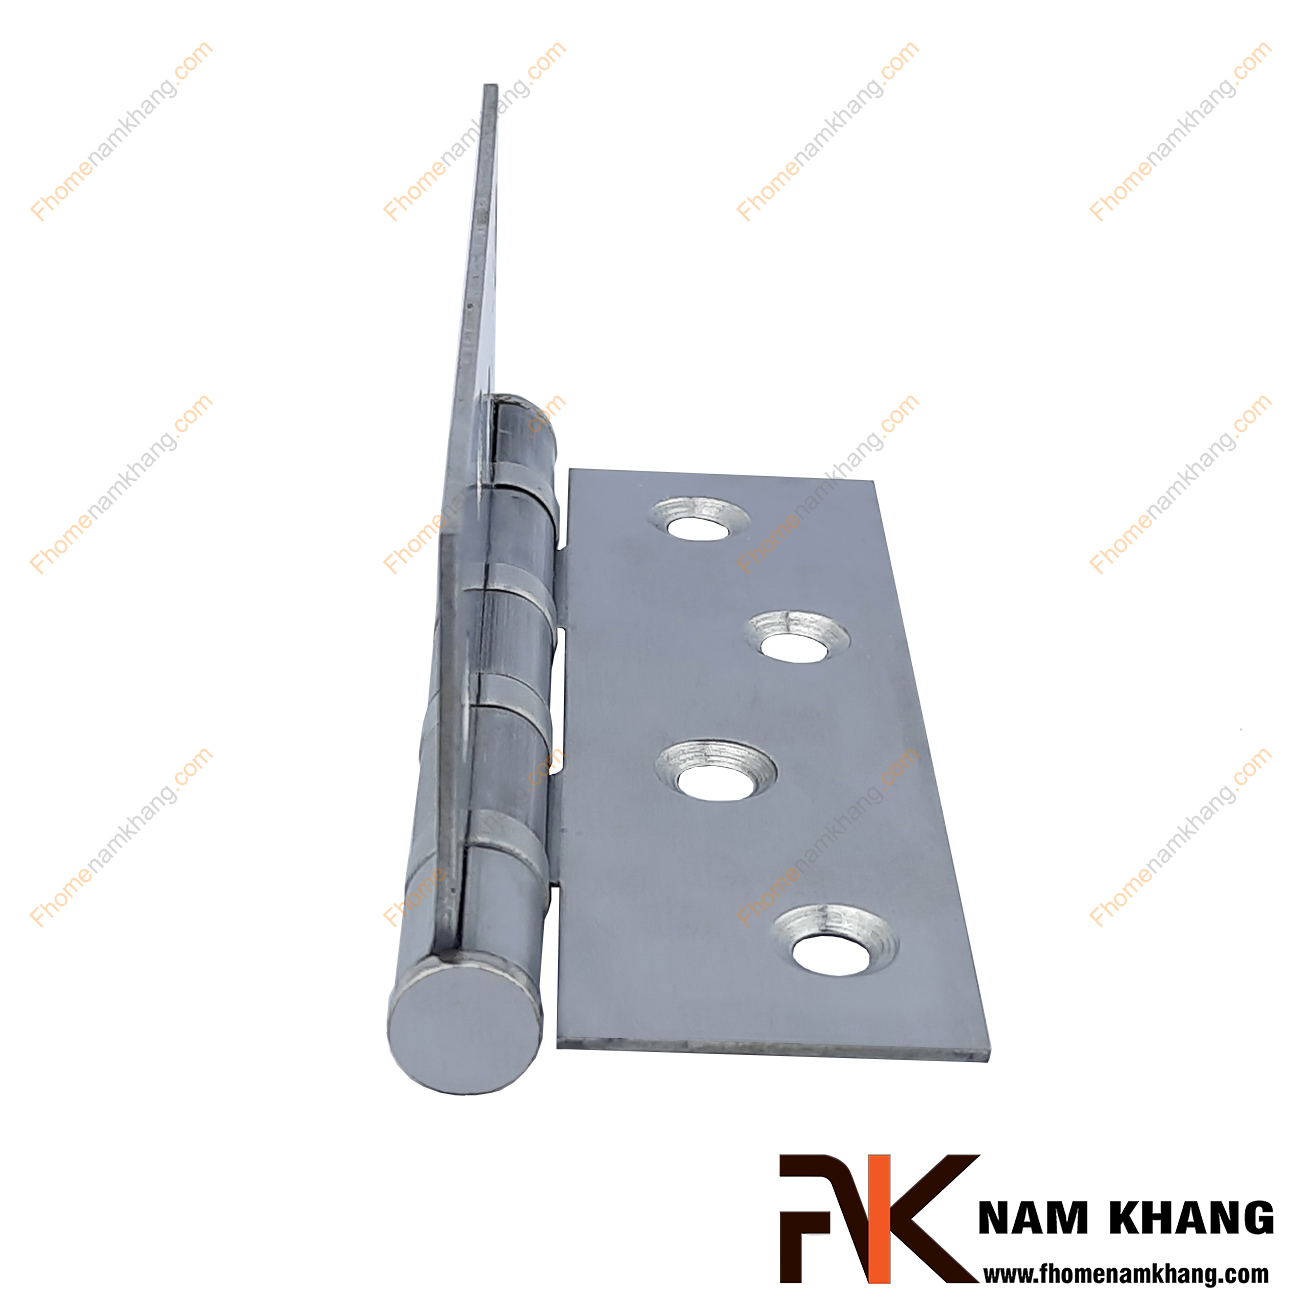 Bản lề cửa cao cấp màu hợp kim bóng NK307-10HK được sản xuất từ chất liệu cao cấp, là sản phẩm quan trọng khi lắp đặt các cánh cửa.